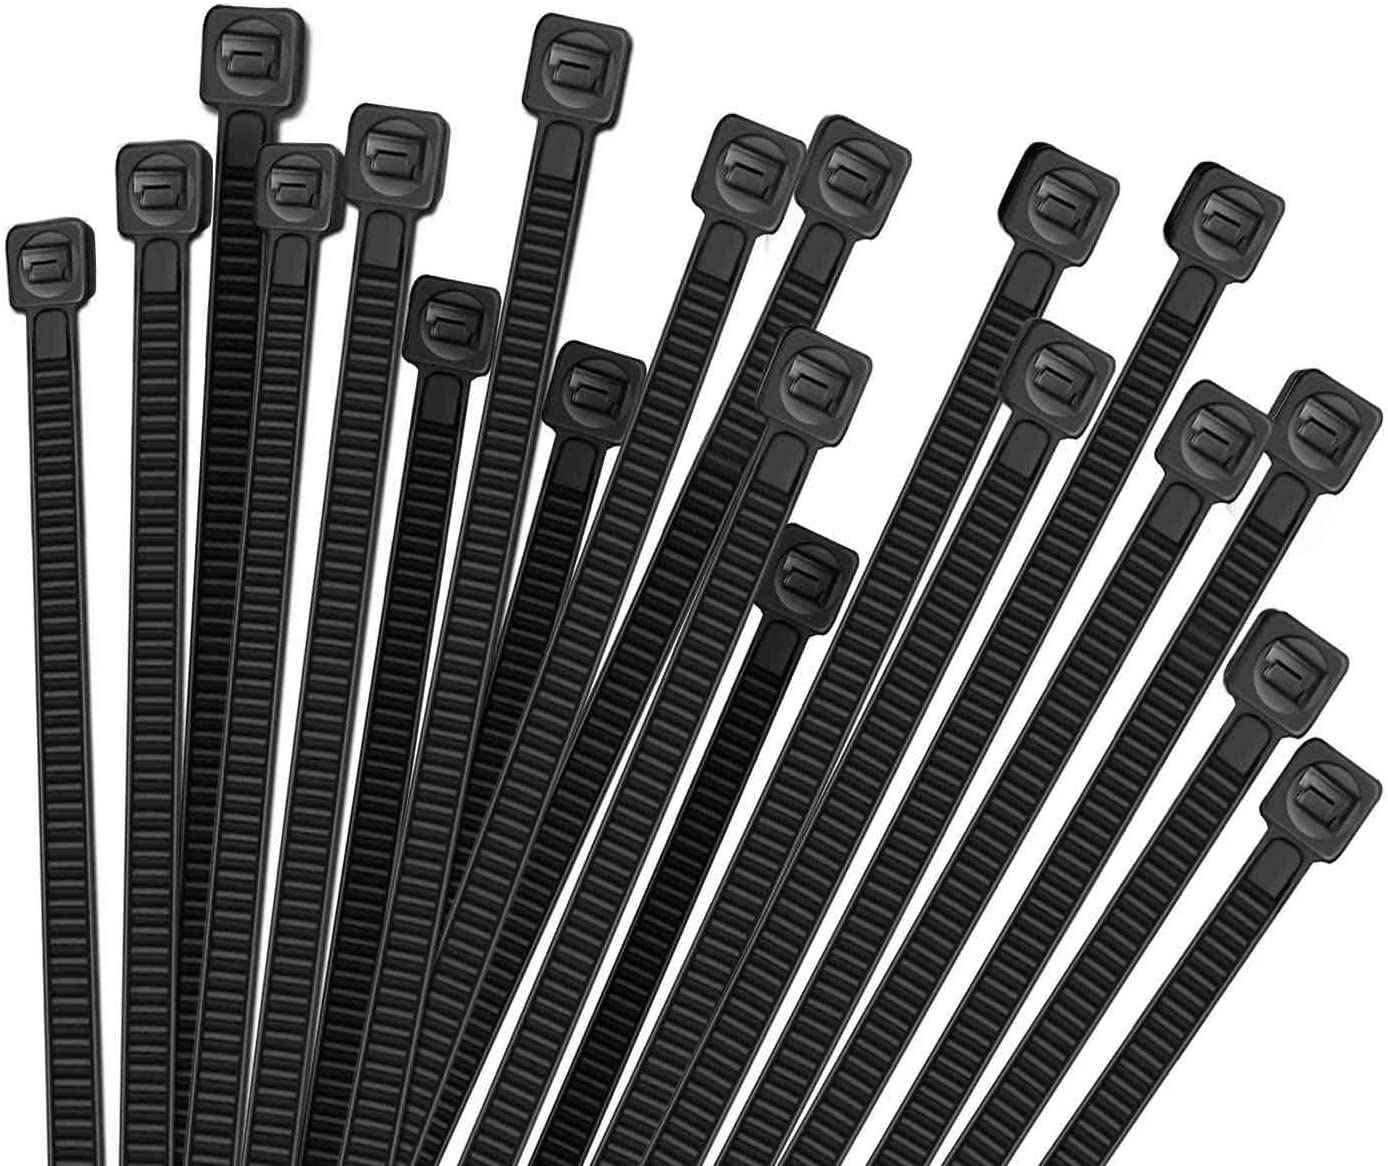 Kuber Industries 250 MM Self Locking Cable TiesHeavy Duty Nylon Zip TiesPack of 100 Black